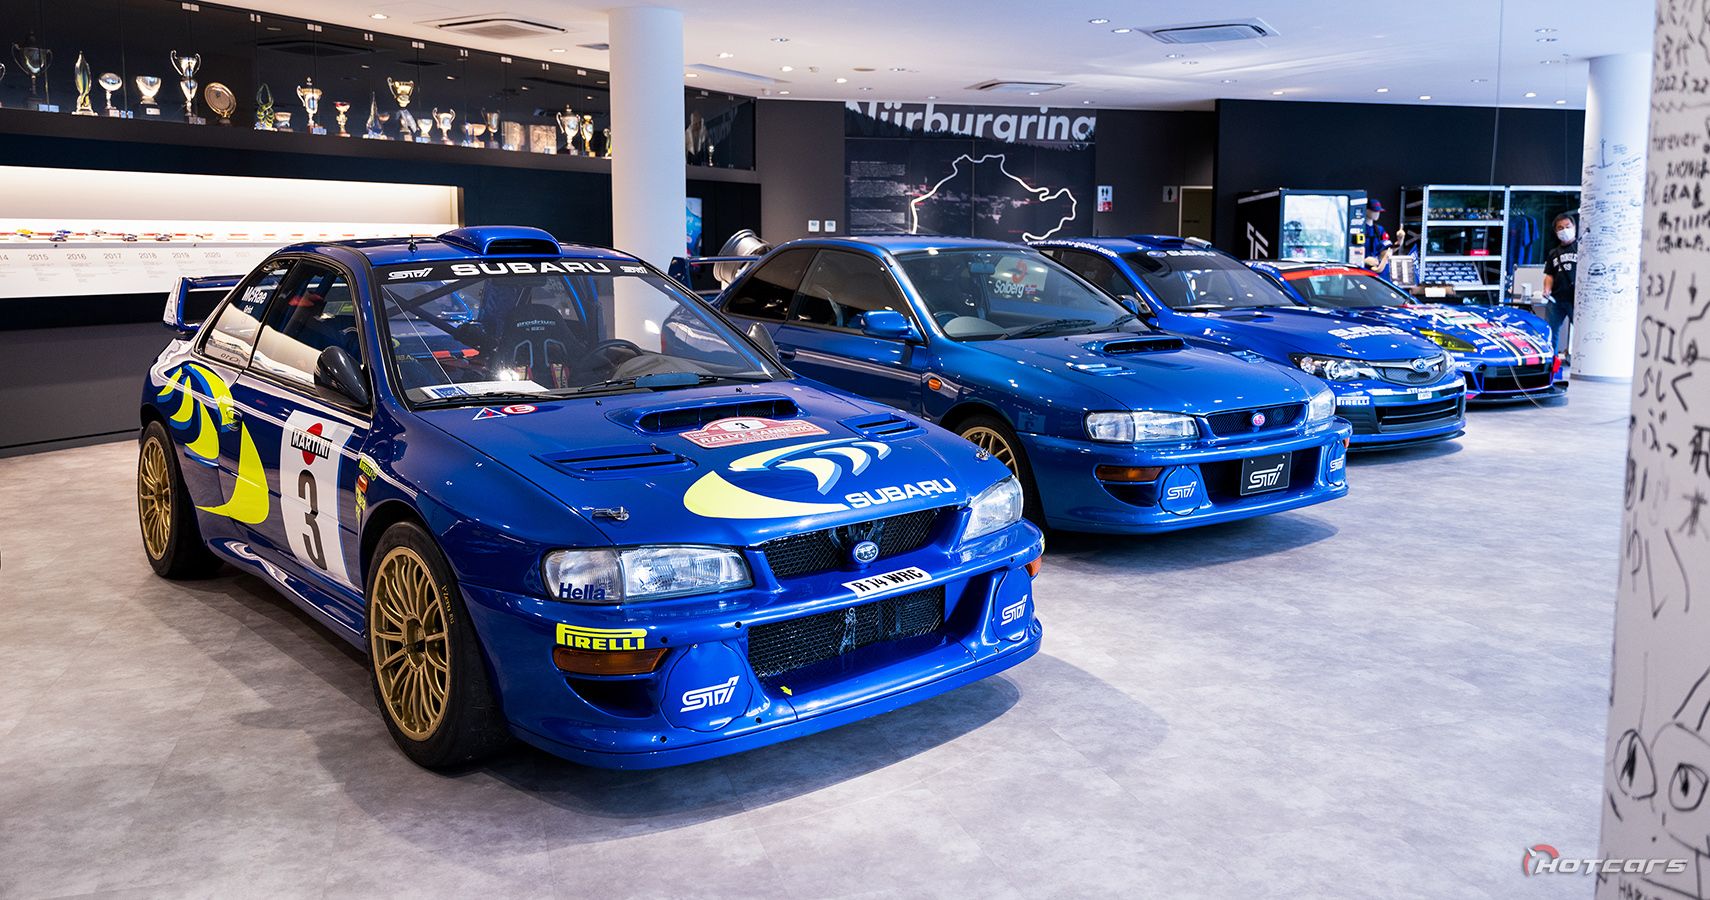 Subaru WRC and Super GT display